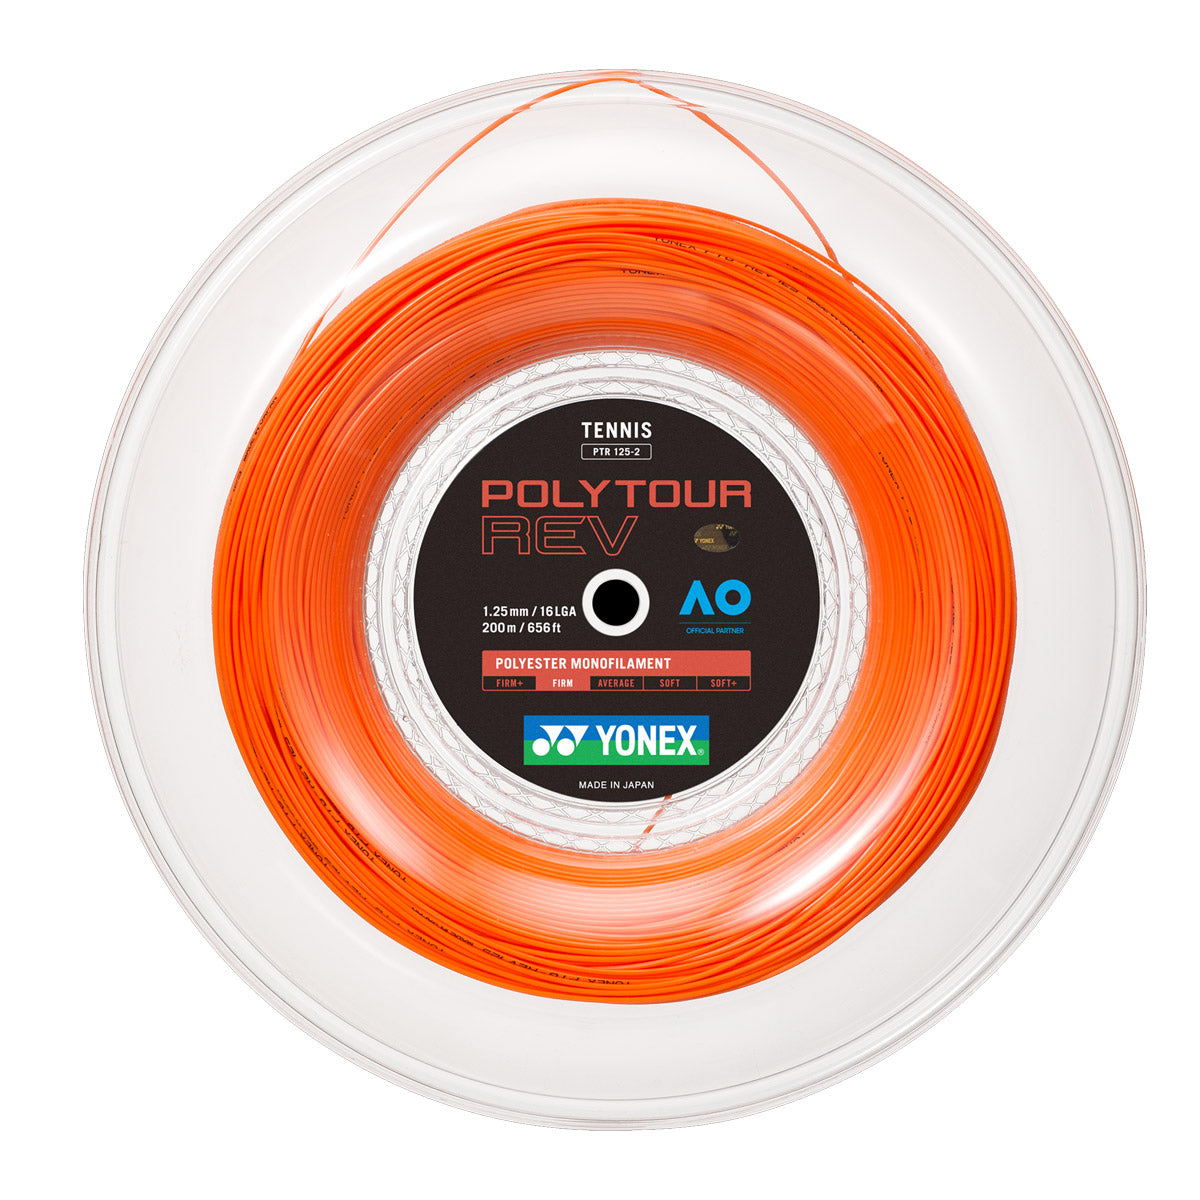 Yonex Polytour Rev 1.25mm 200m 卷轴网球线 橙色